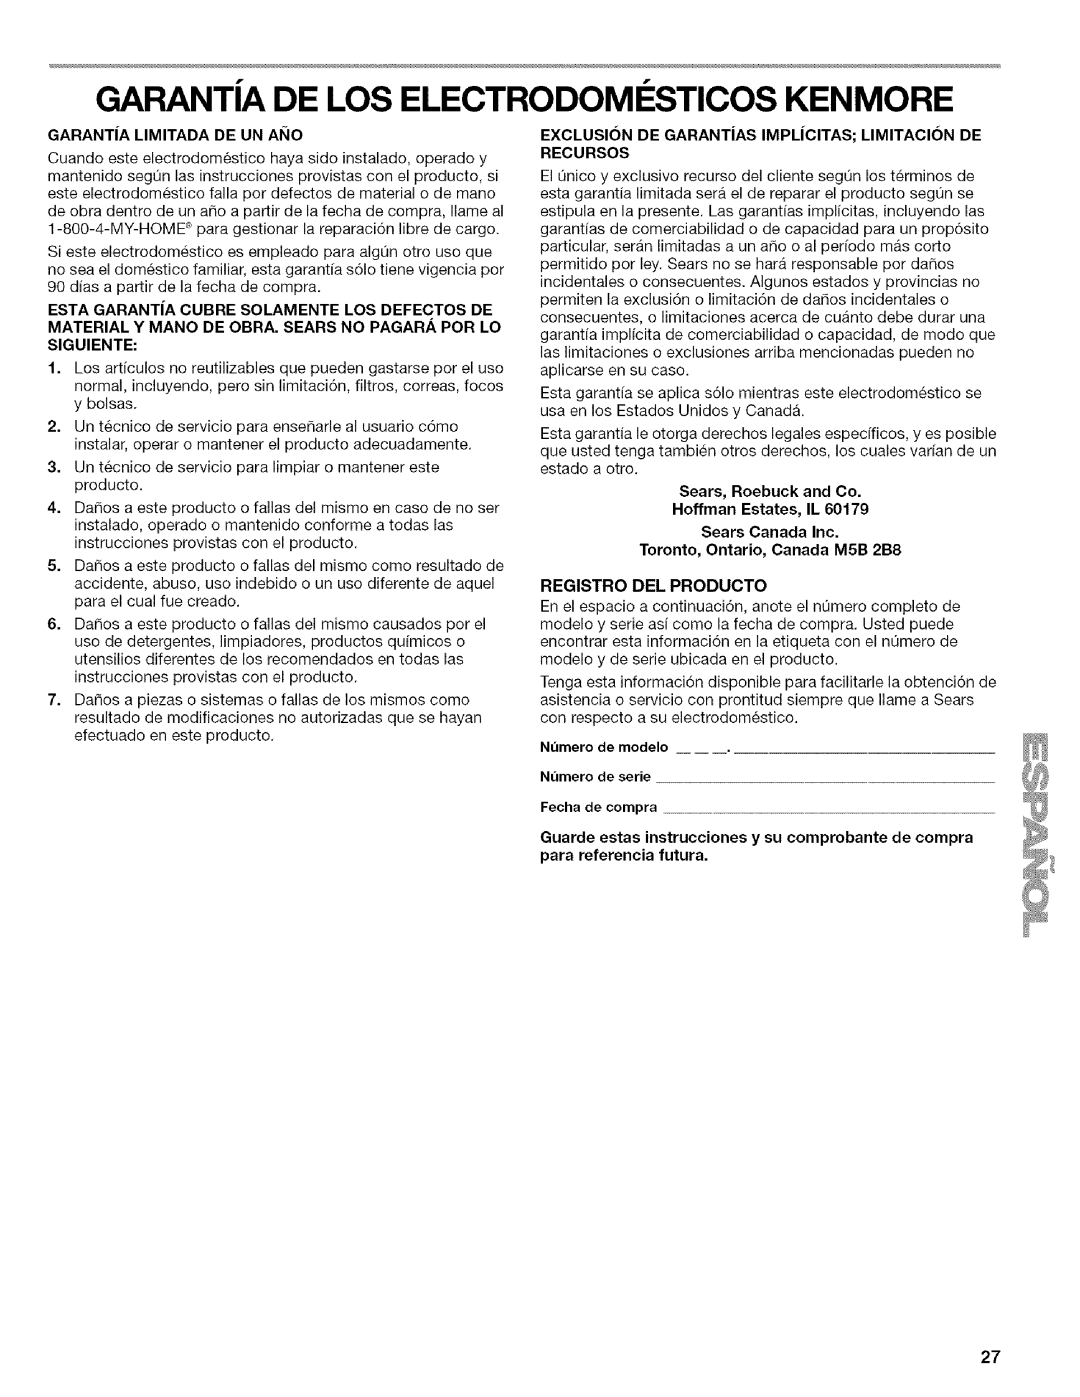 Kenmore WI0151336A manual Garanta De Los Electrodomesticos Kenmore, Garant|A Limitada De Un Ai_Io, Registro Del Producto 